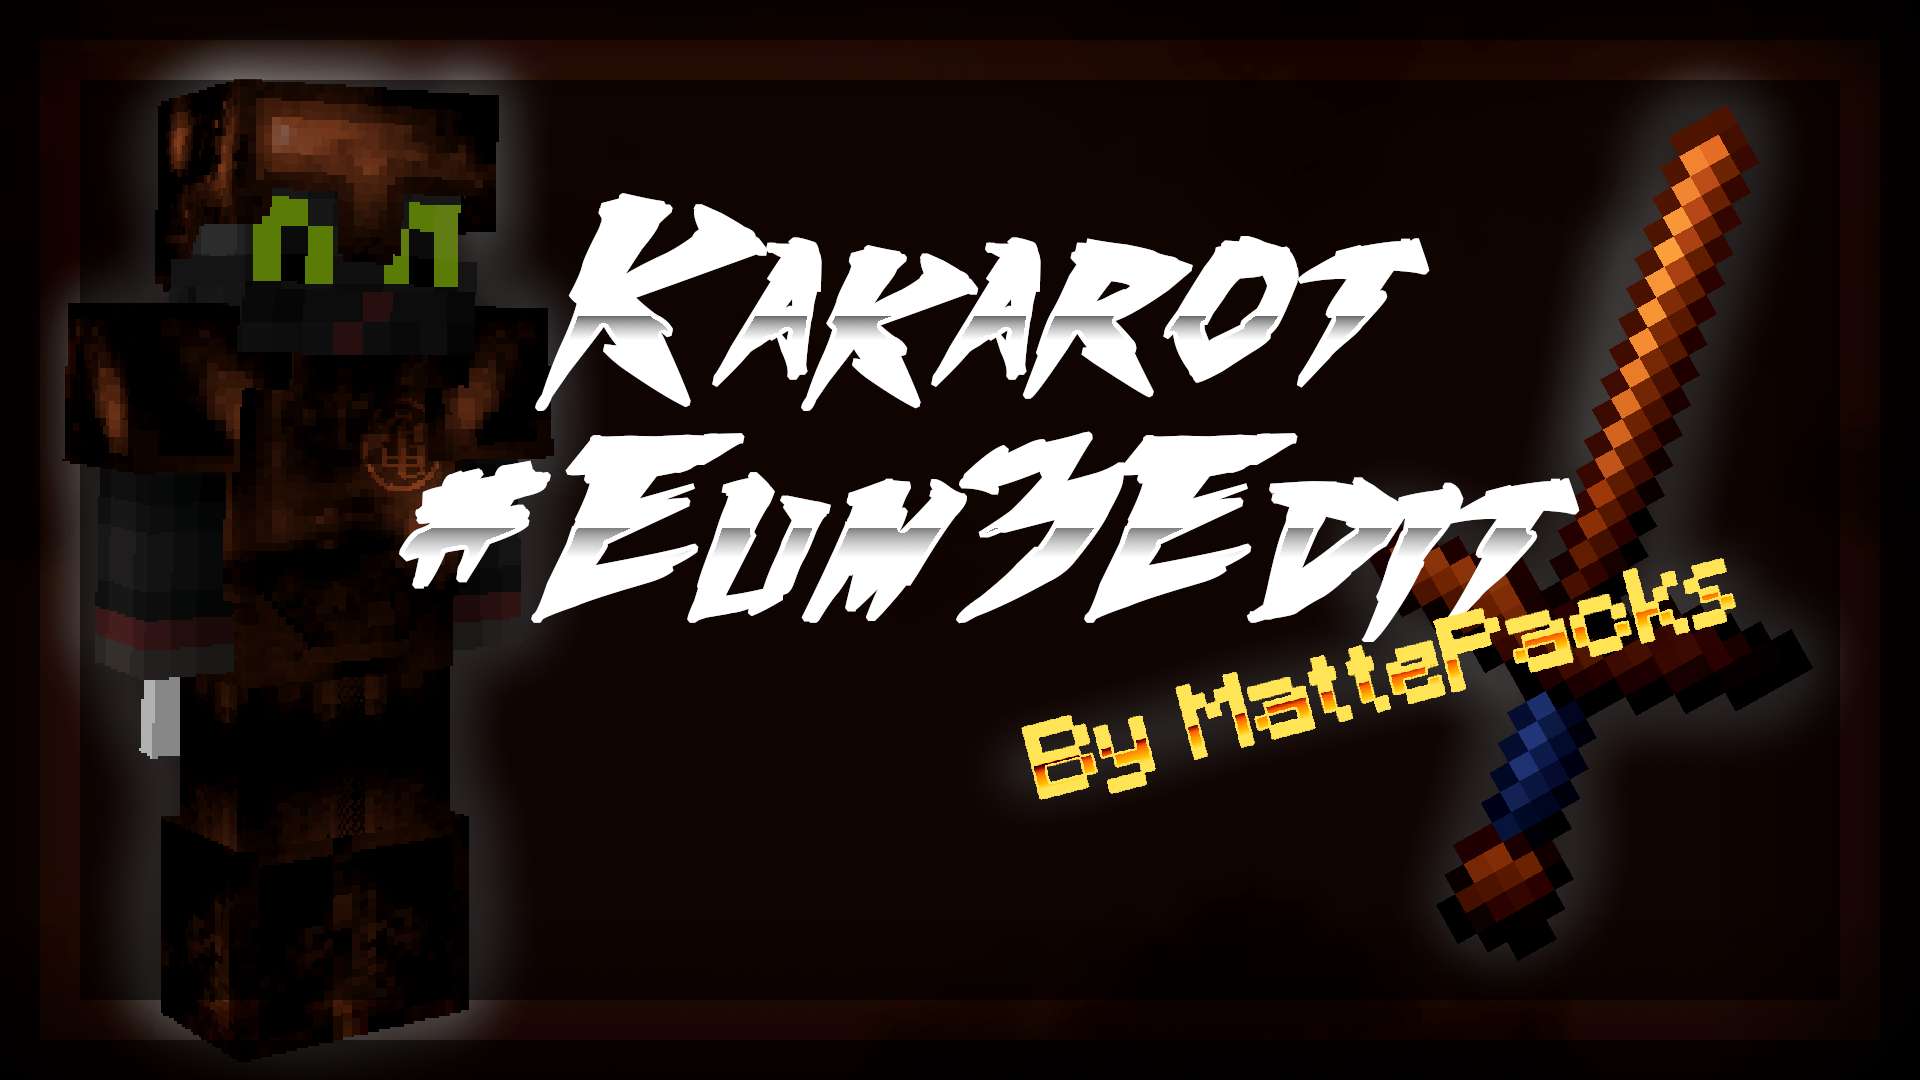 Kakarot #Eum3Edit 32 by MattePacks on PvPRP